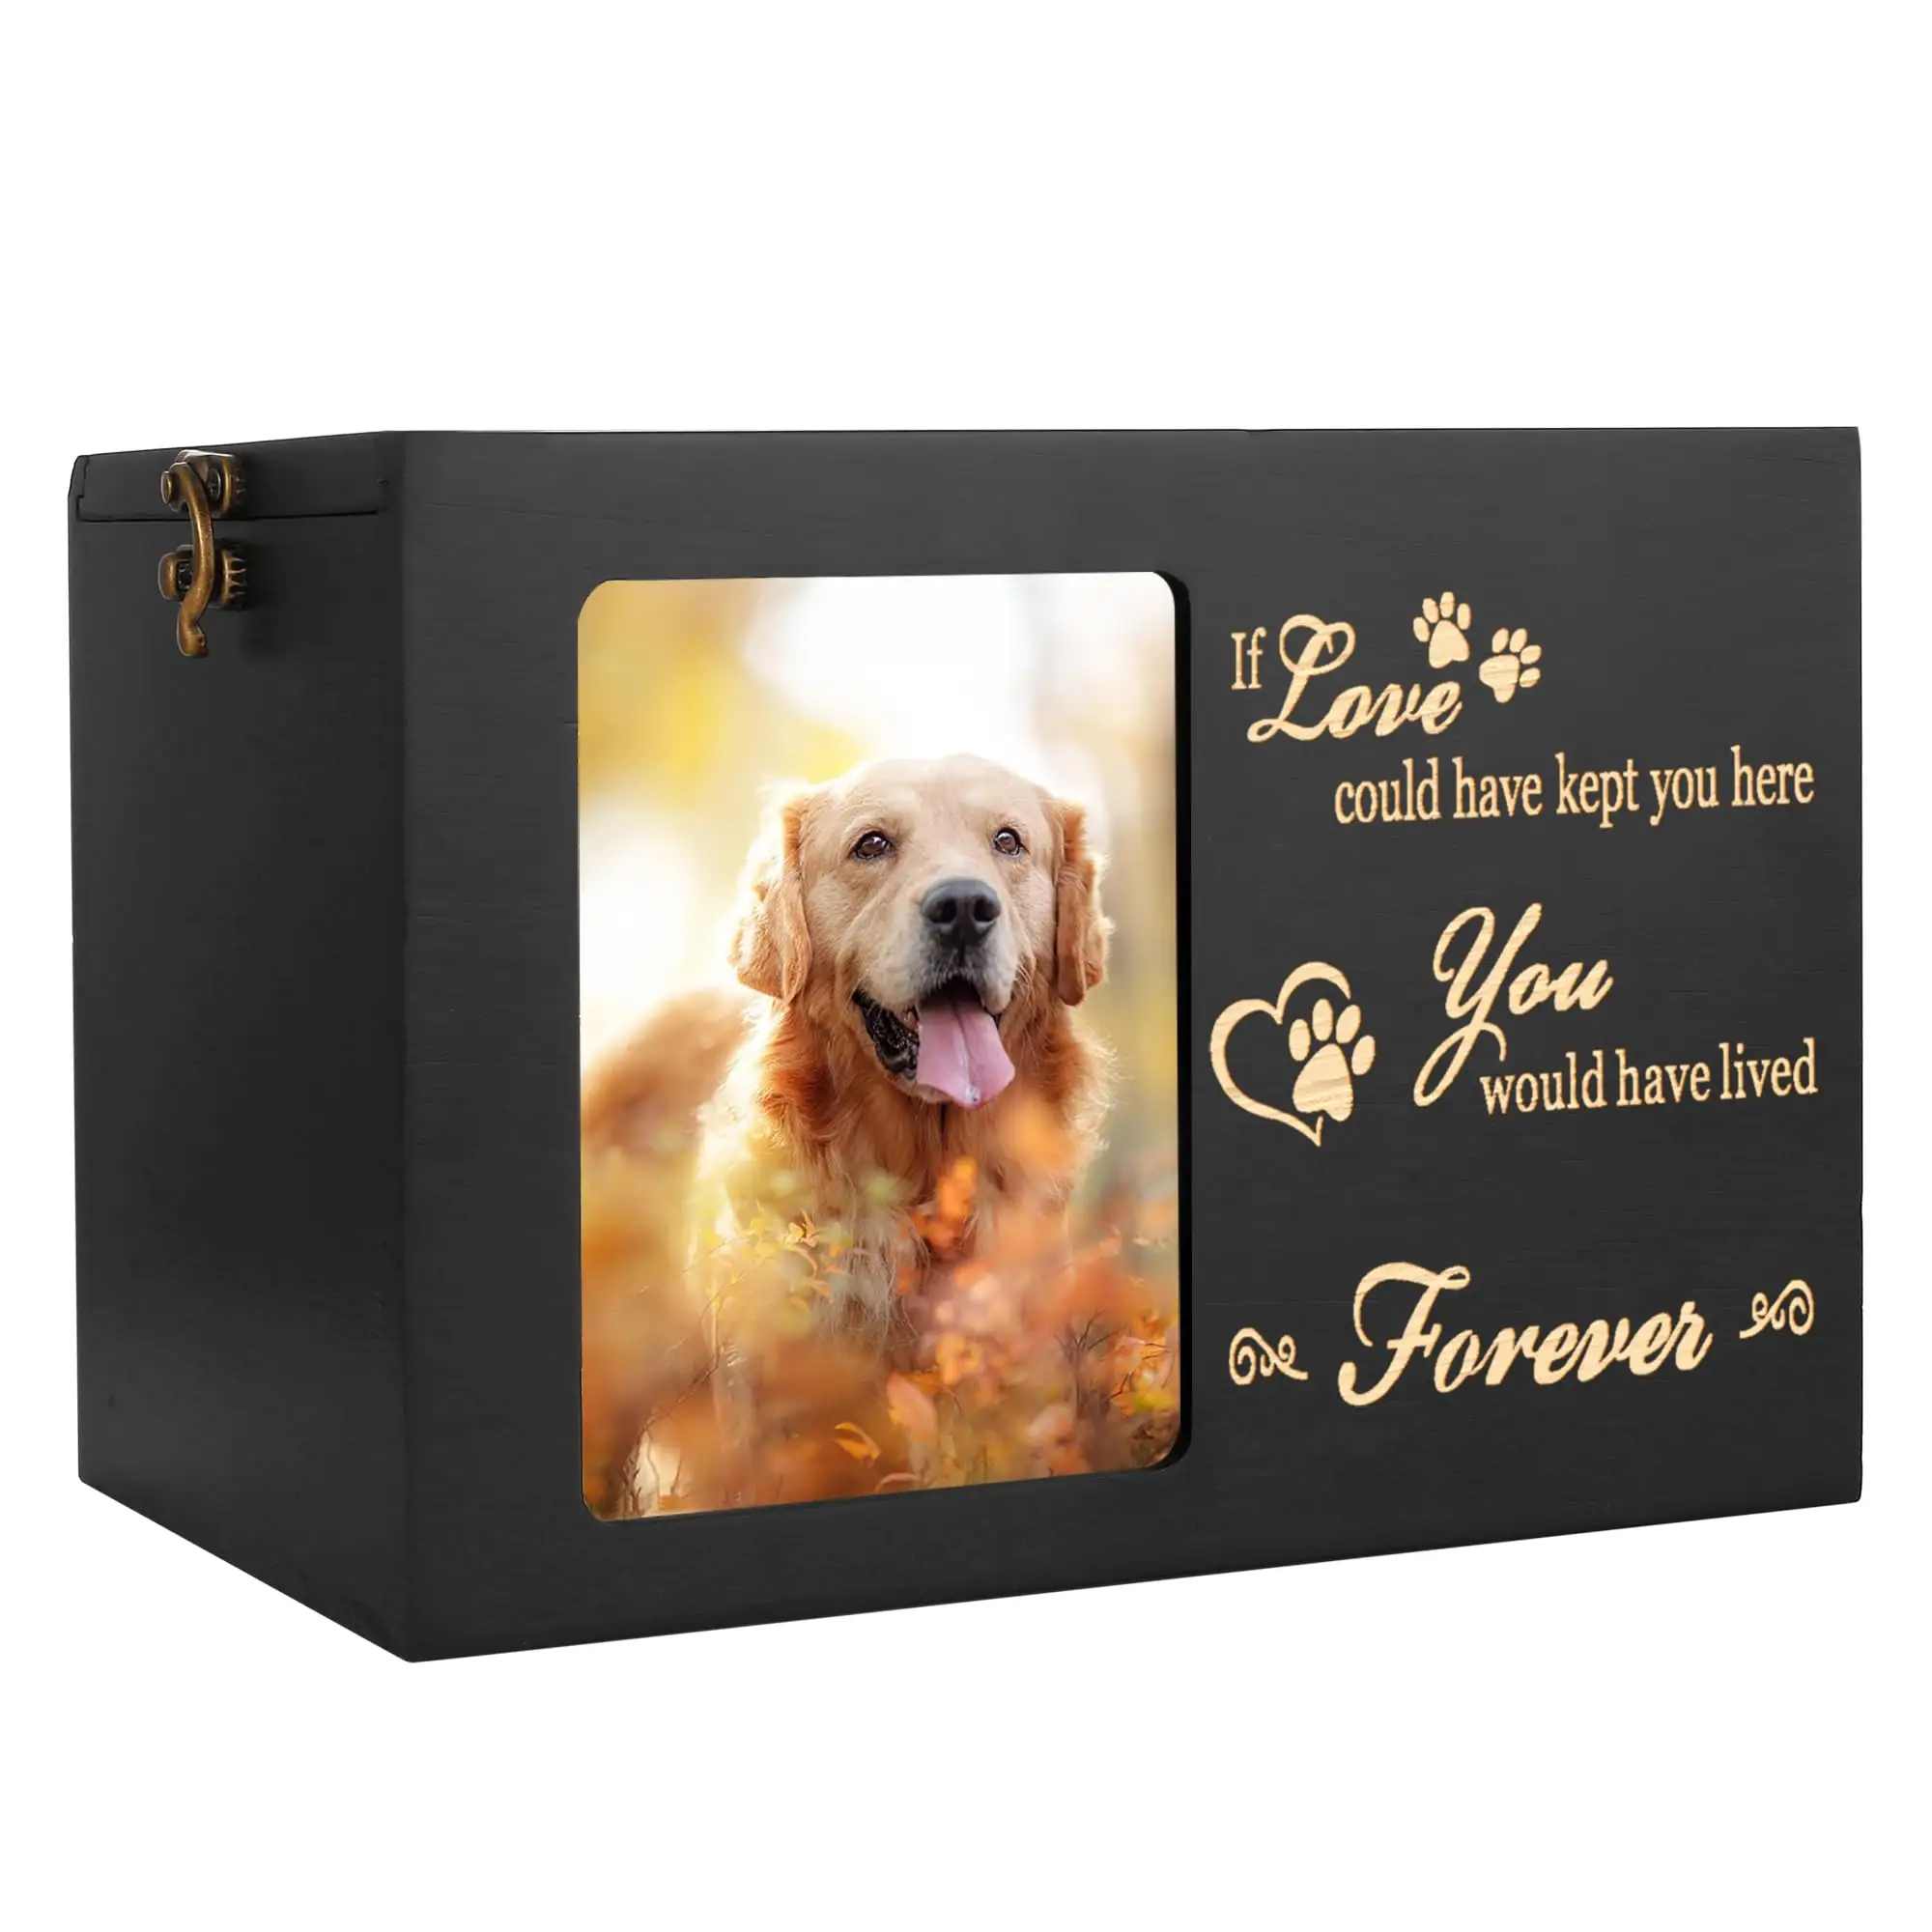 मेमोरियल उपहार बांस कुत्ता बिल्ली कलश फोटो फ्रेम के साथ पालतू जानवरों के कुत्ते मेमोरी बॉक्स के लिए लकड़ी के कलश